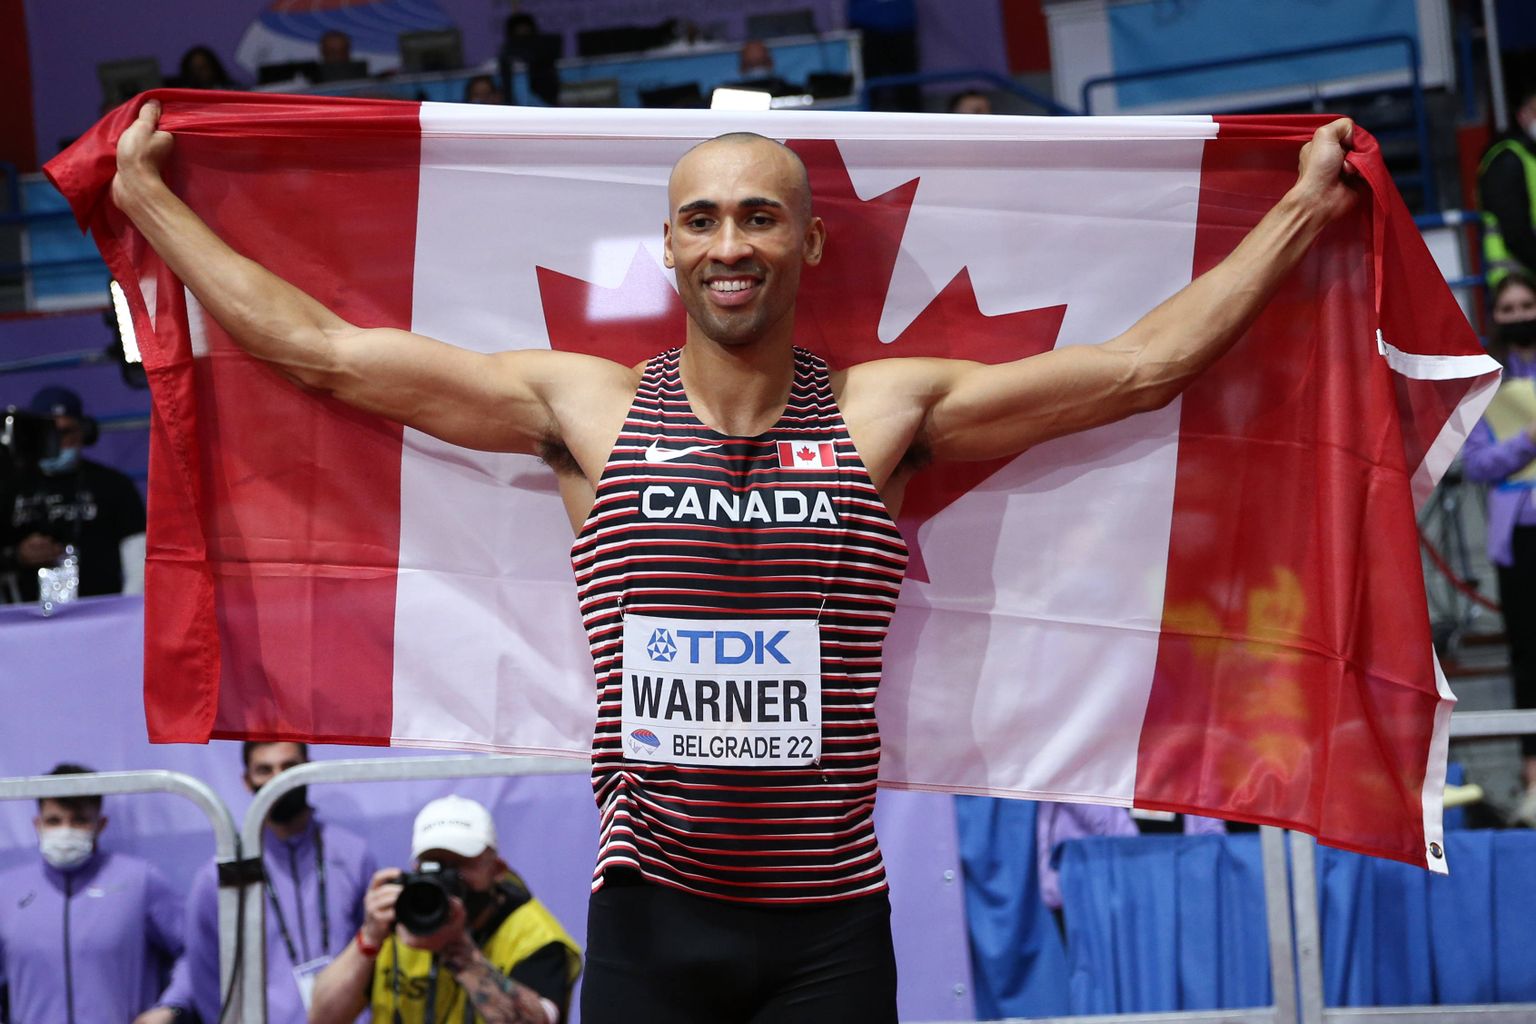 Olümpiavõitja ja paari kuu eest sisemaailmameistriks kroonitud Damian Warner on kümnevõistluse suursoosik.